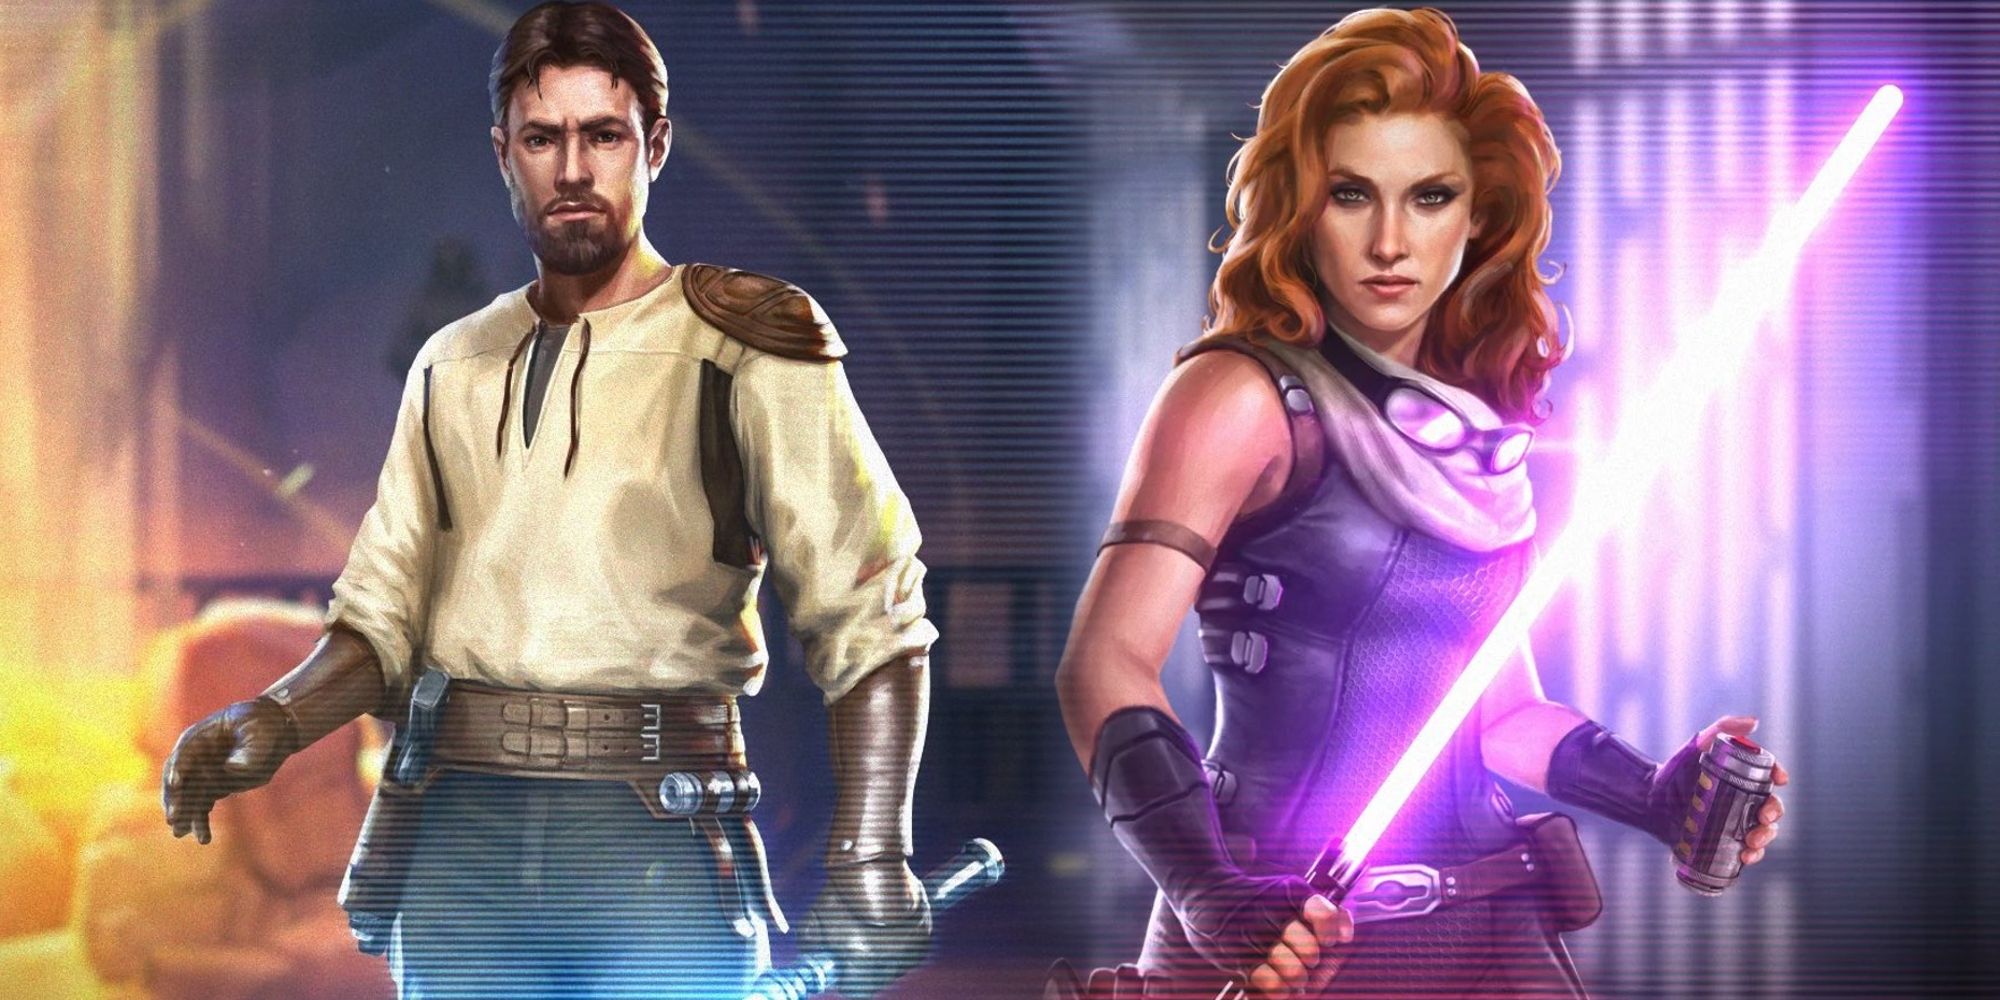 Afbeelding van Jedi Kyle Katarn en Mara Jade naast elkaar afgebeeld met hun lichtzwaarden verlicht.